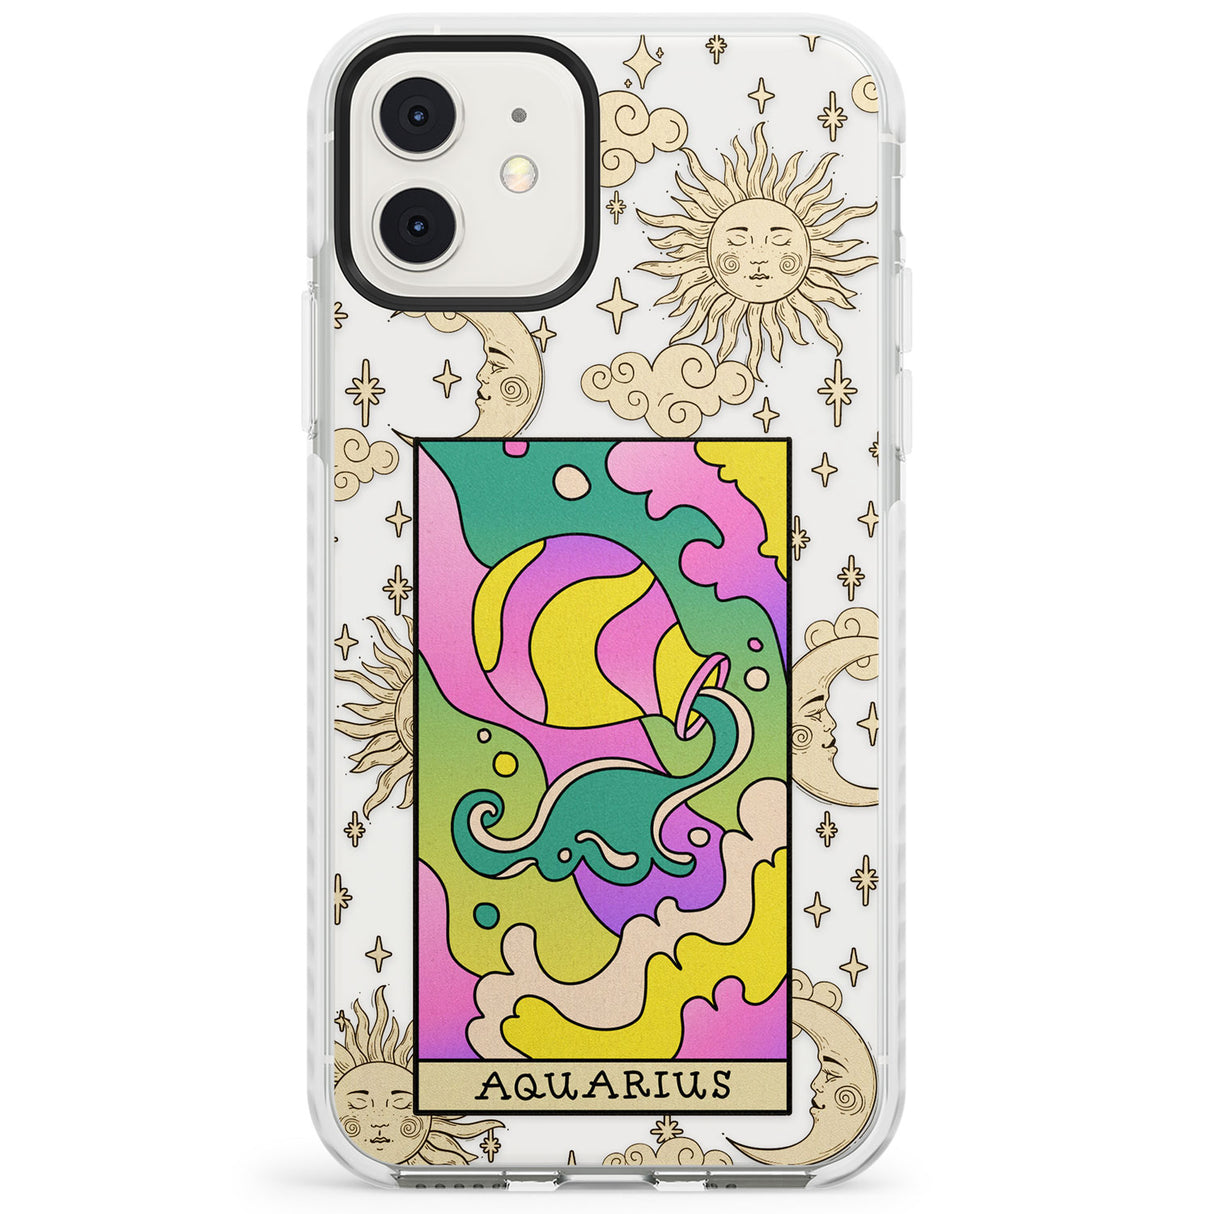 Celestial Zodiac - Aquarius Impact Phone Case for iPhone 11, iphone 12